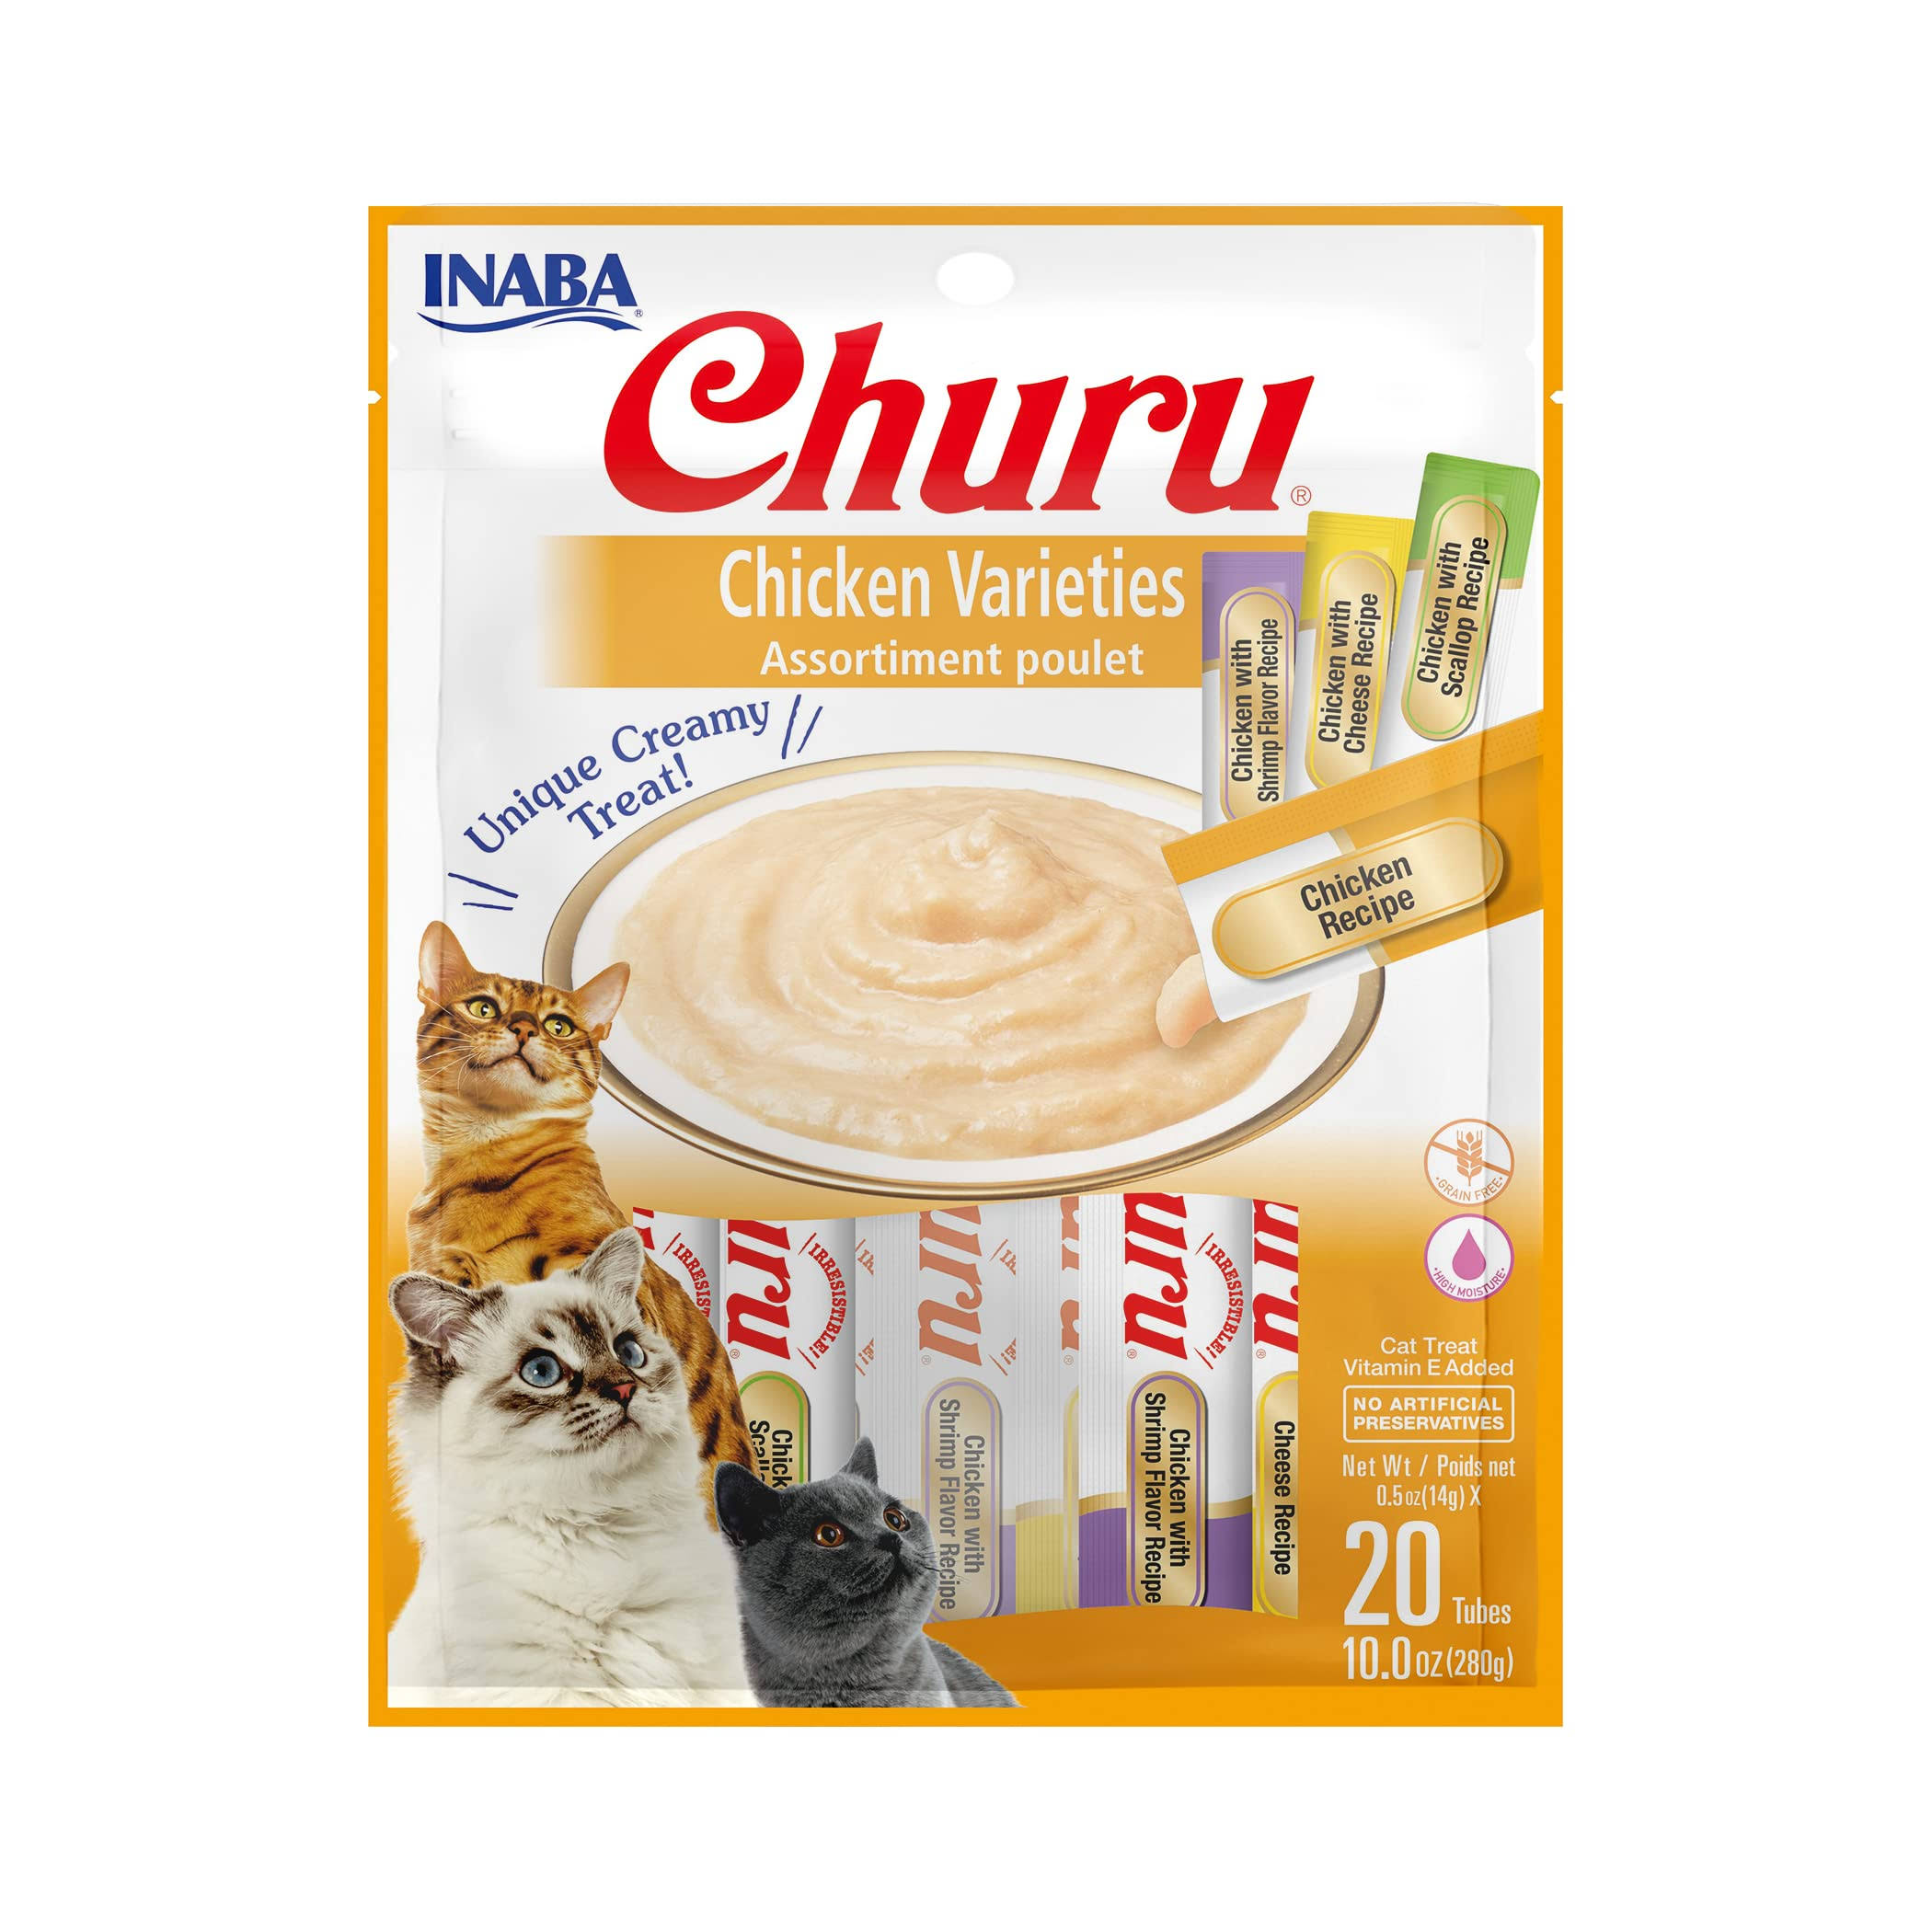 Inaba Churu Chicken Puree Cat Treats Variety Pack, 20 Count